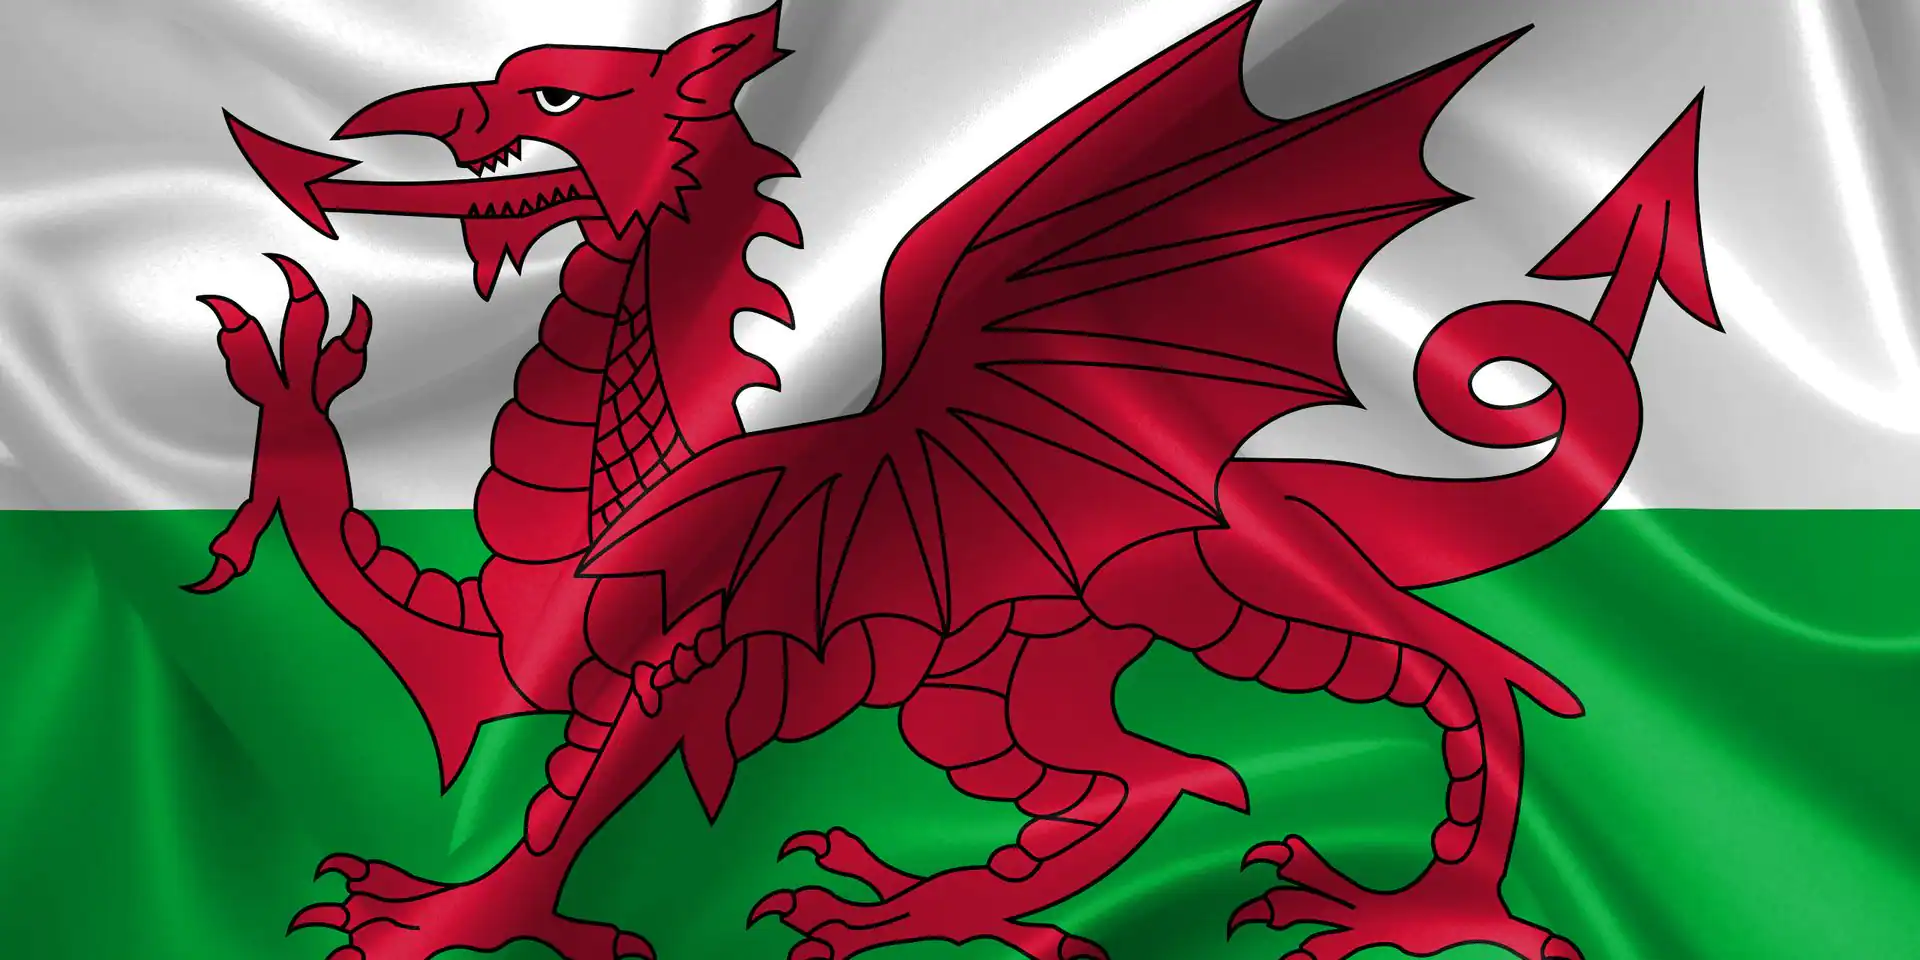 Wales öppnar sitt första center någonsin padel